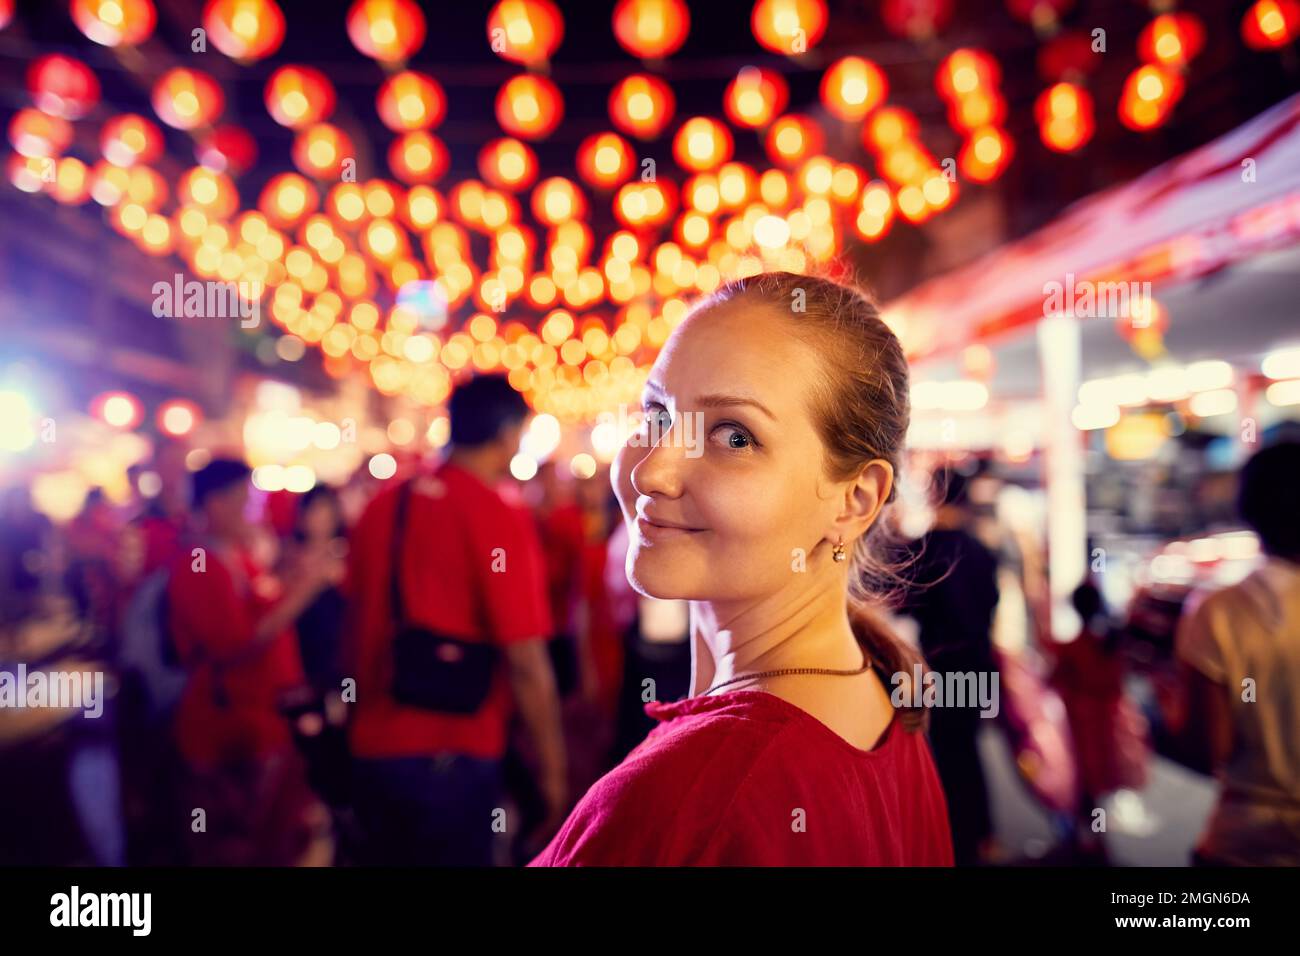 Touristin in rotem Hemd Porträt in der Nähe des Nachtmarkts mit roten Laternen für das chinesische Neujahr in Bangkok Chinatown in Thailand Stockfoto